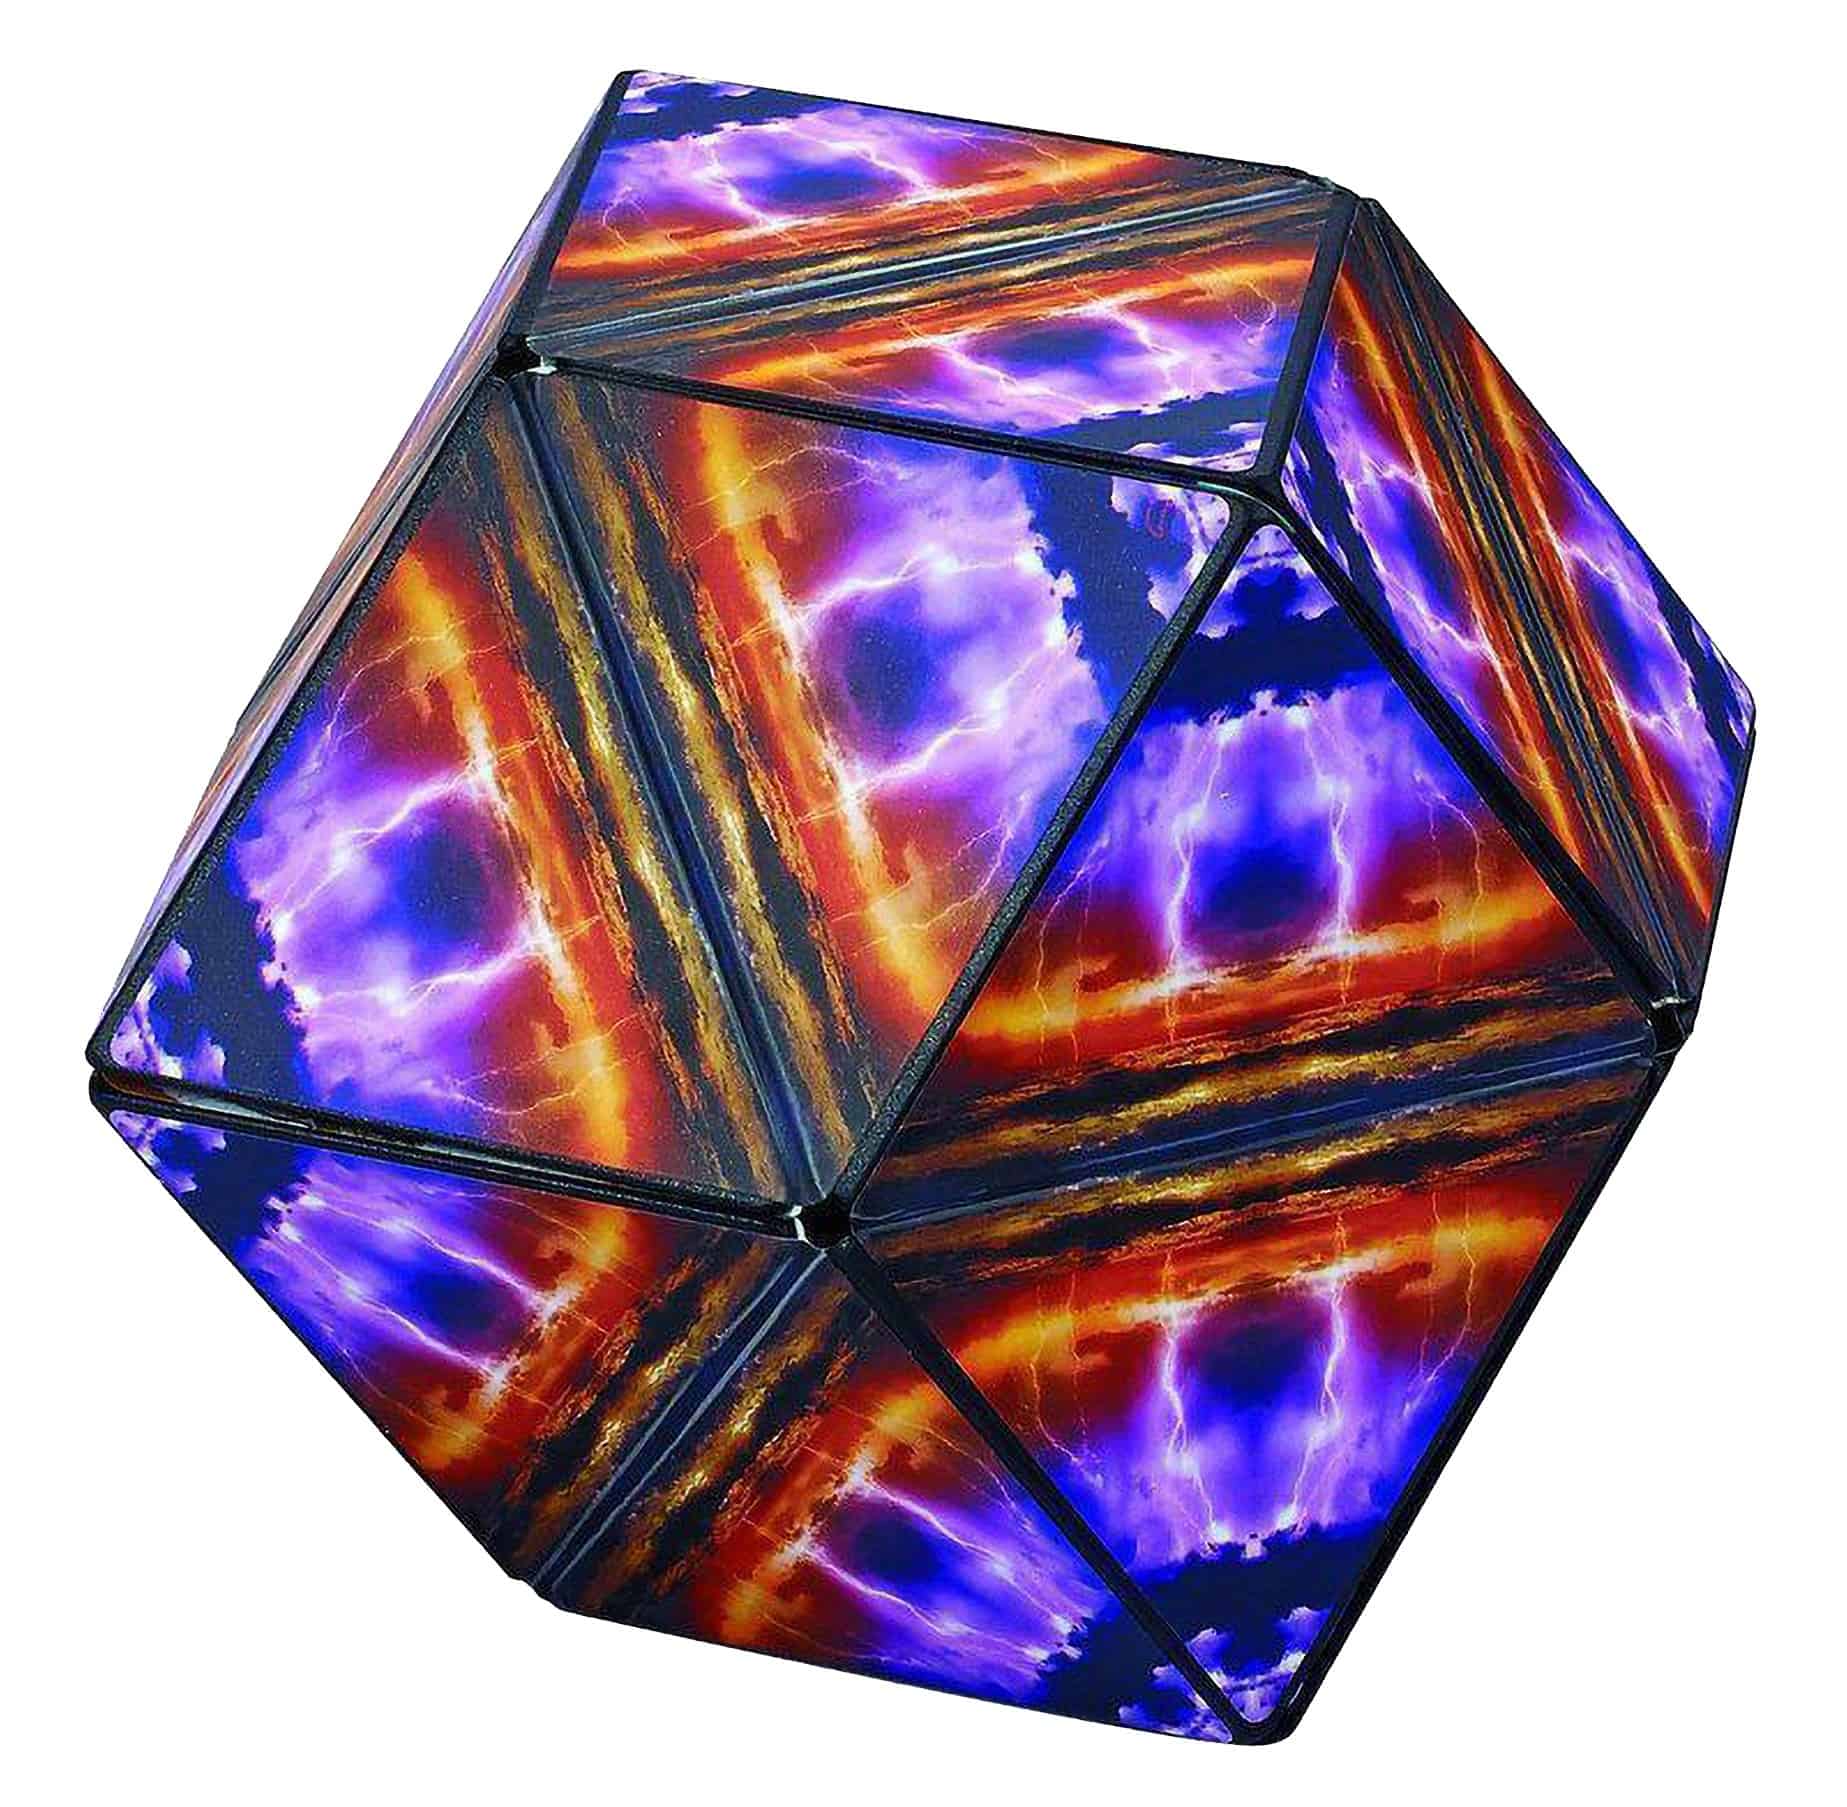 Shashibo - Cube Elements